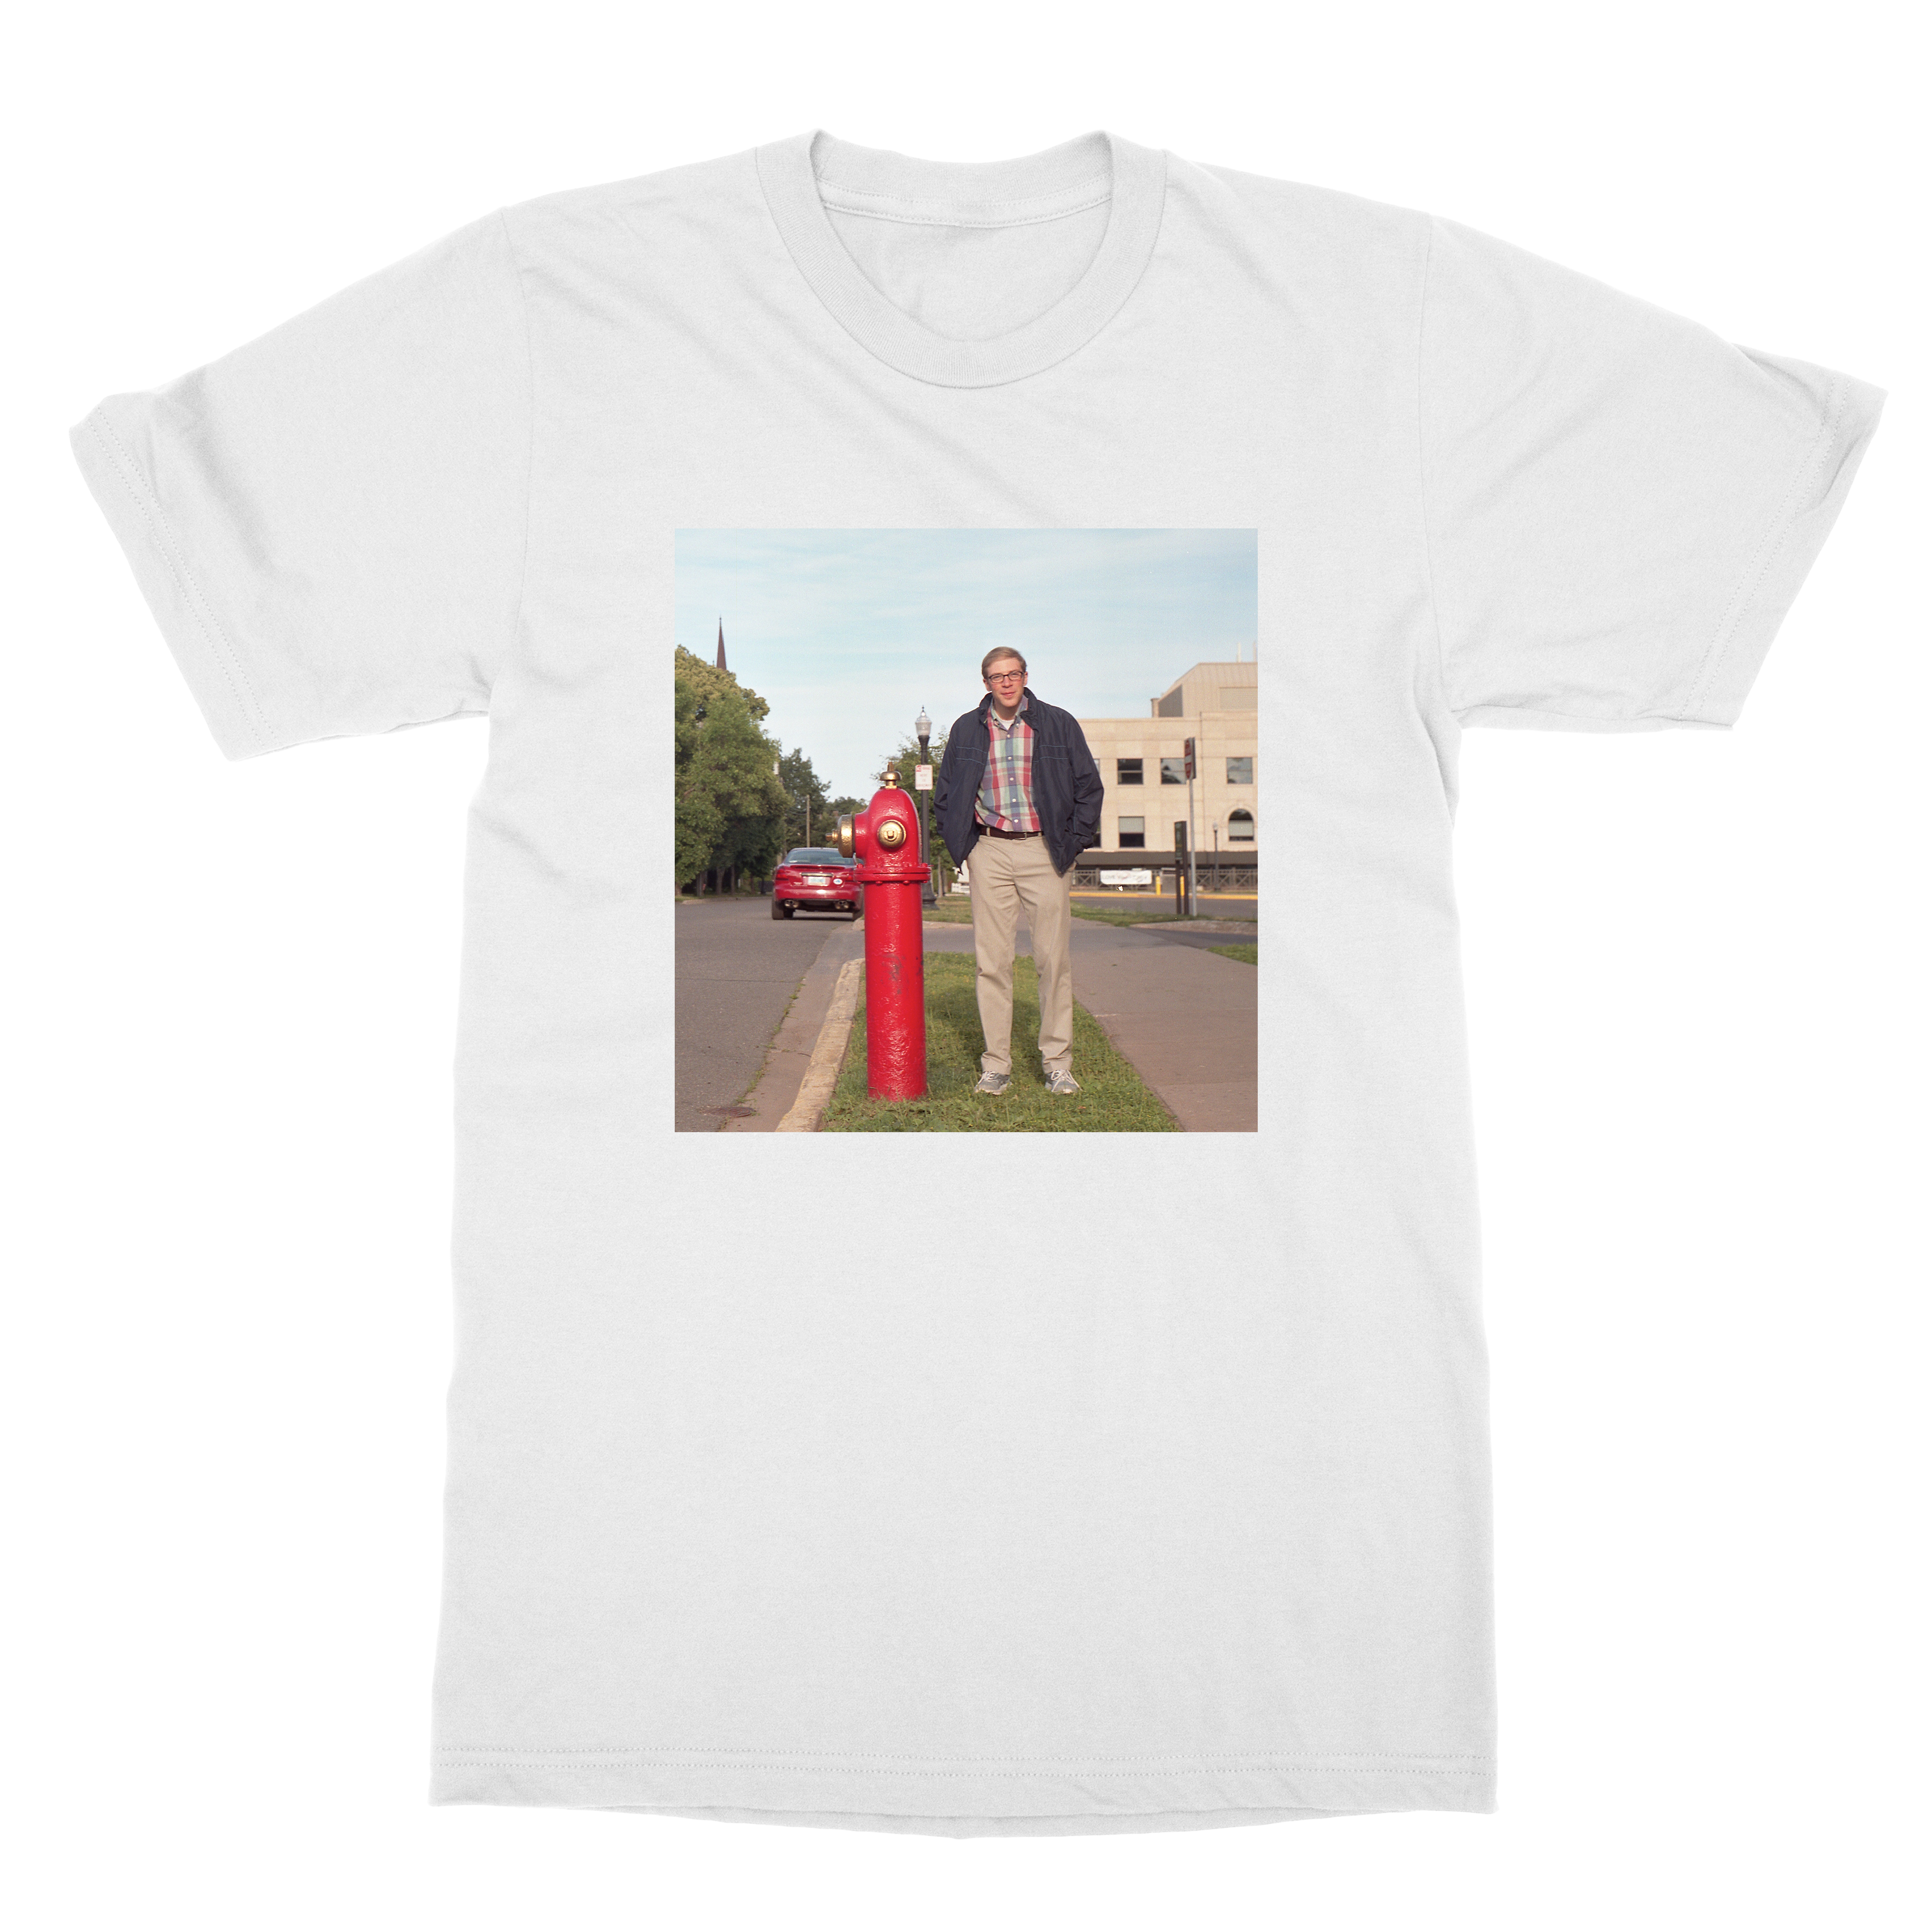 Joe Pera | Hydrant T-Shirt